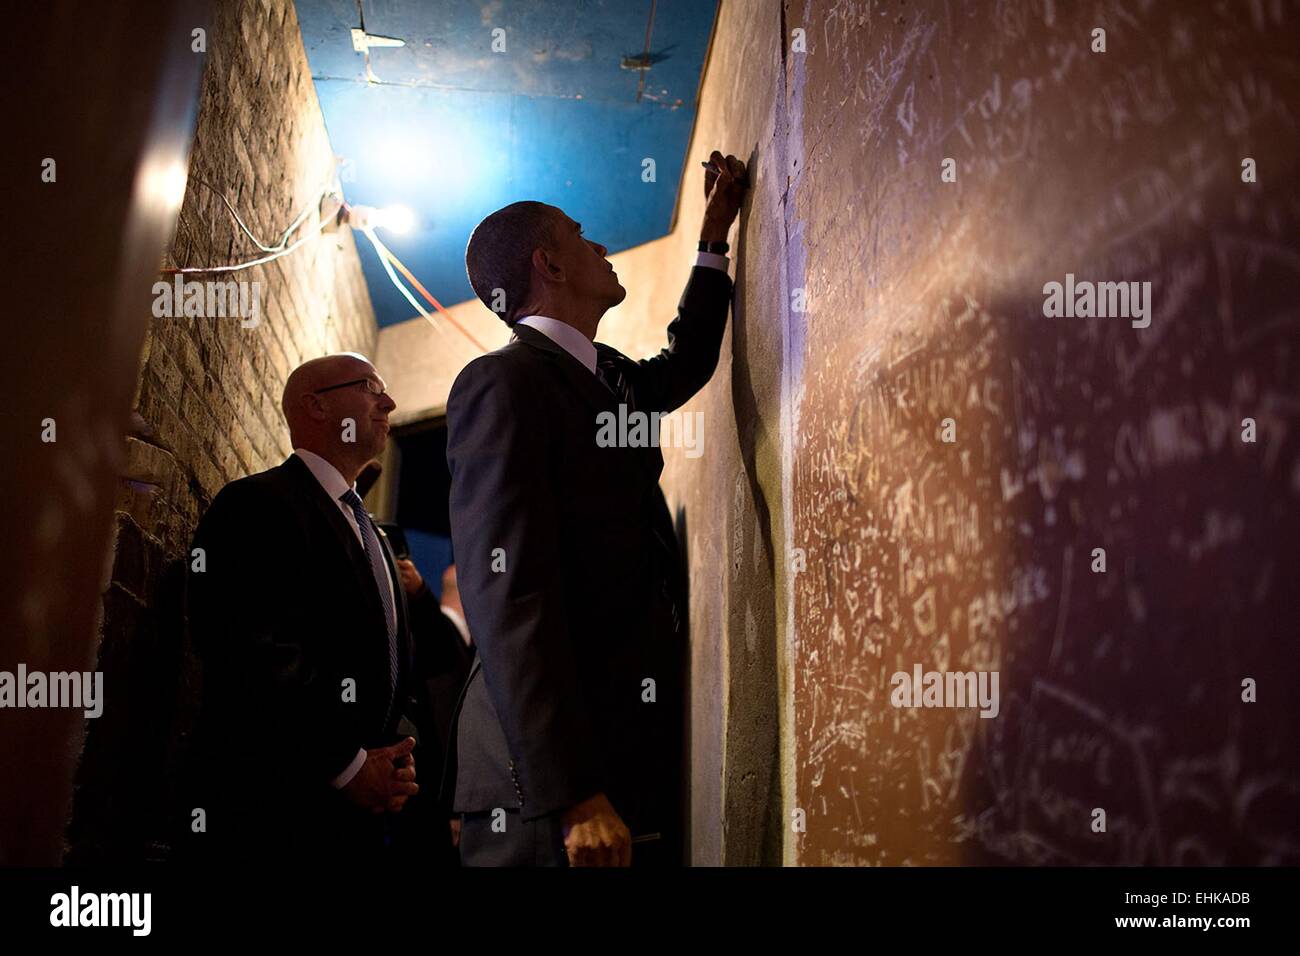 Le président américain Barack Obama signe un mur en coulisses avant de livrer les remarques sur l'immigration au Centre communautaire de Copernicus, 25 novembre 2014 à Chicago, IL. Banque D'Images